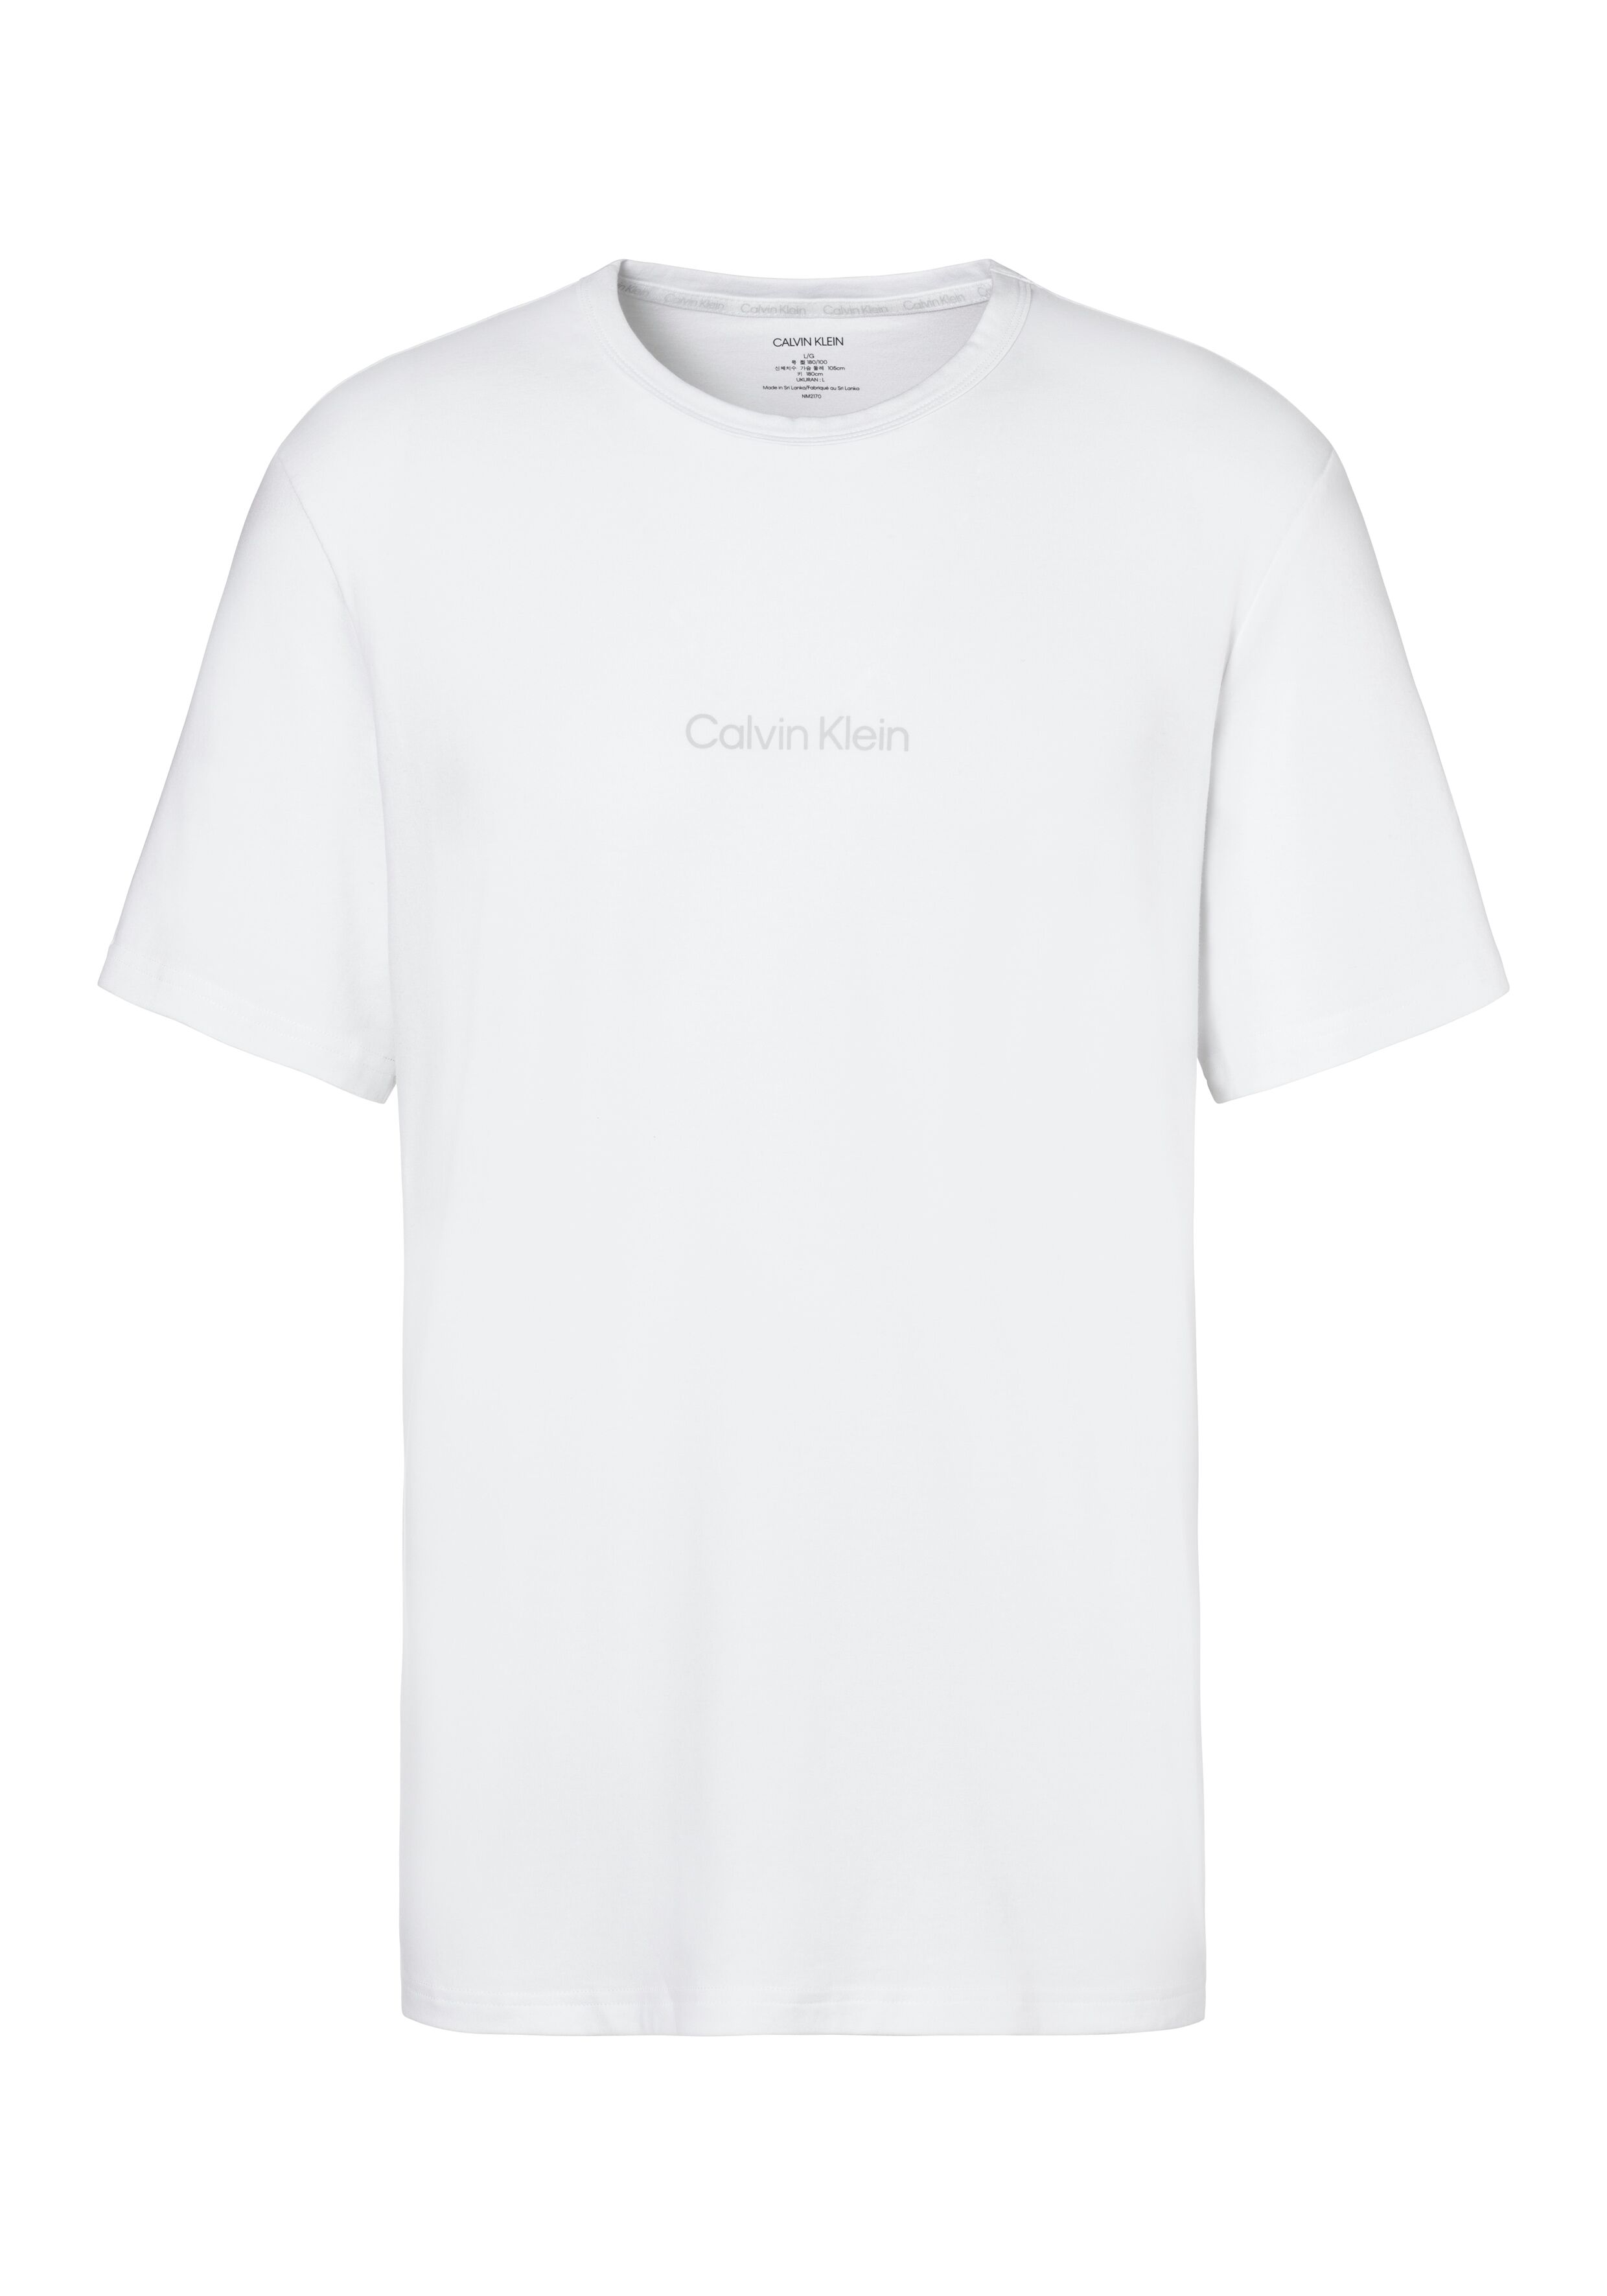 Calvin Klein T-Shirt, mit Logo Druck weiss  L M S XL